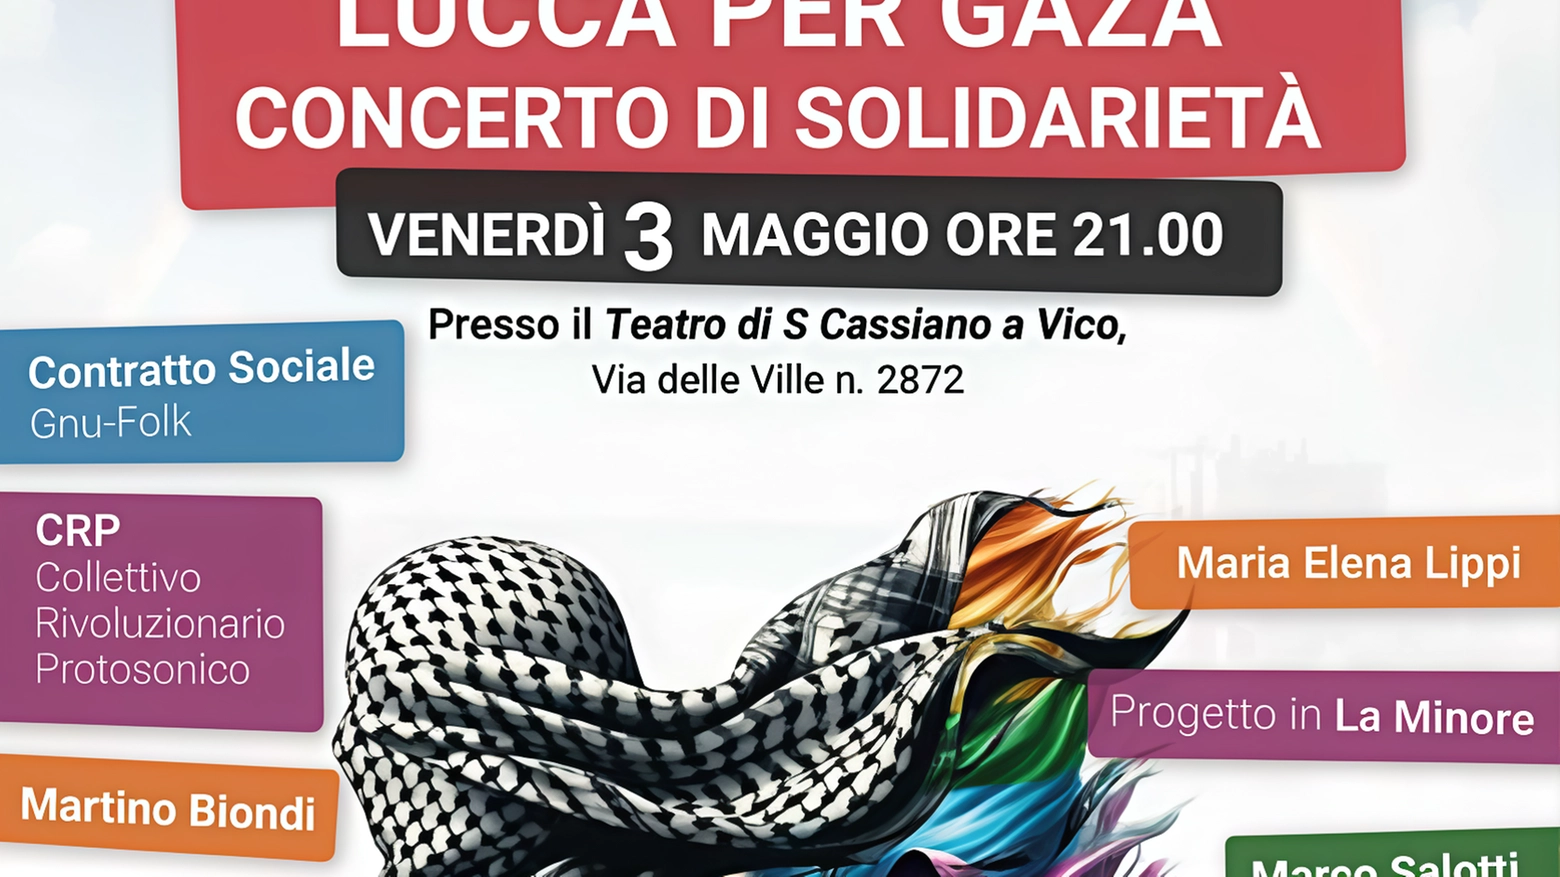 Stasera il concerto “Lucca per Gaza“. Incasso in beneficenza